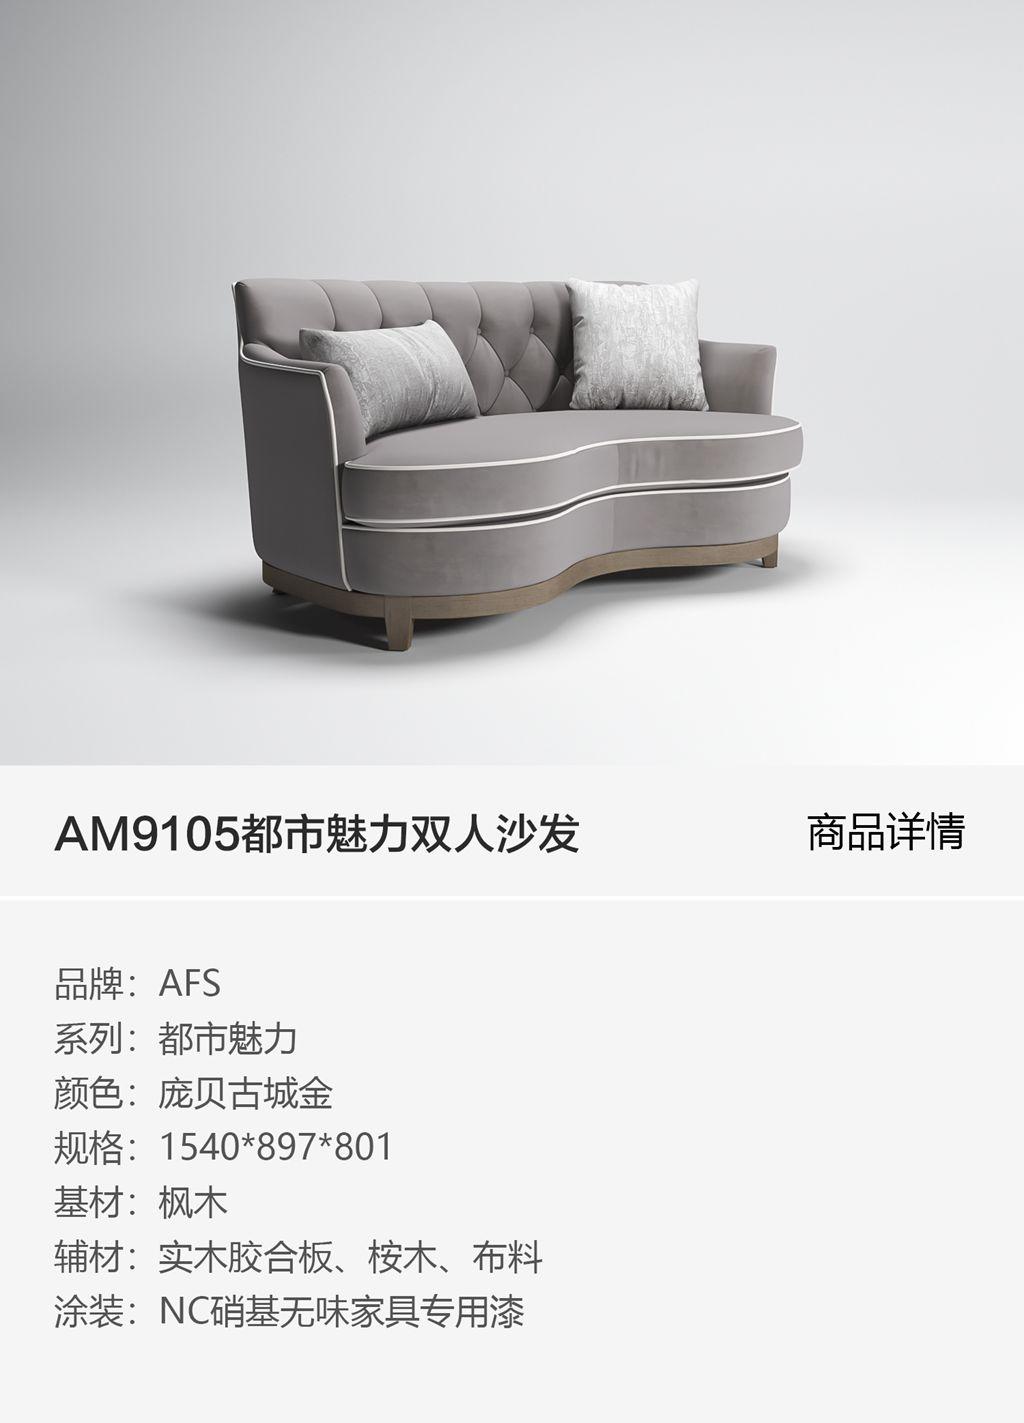 AM9105都市魅力双人沙发